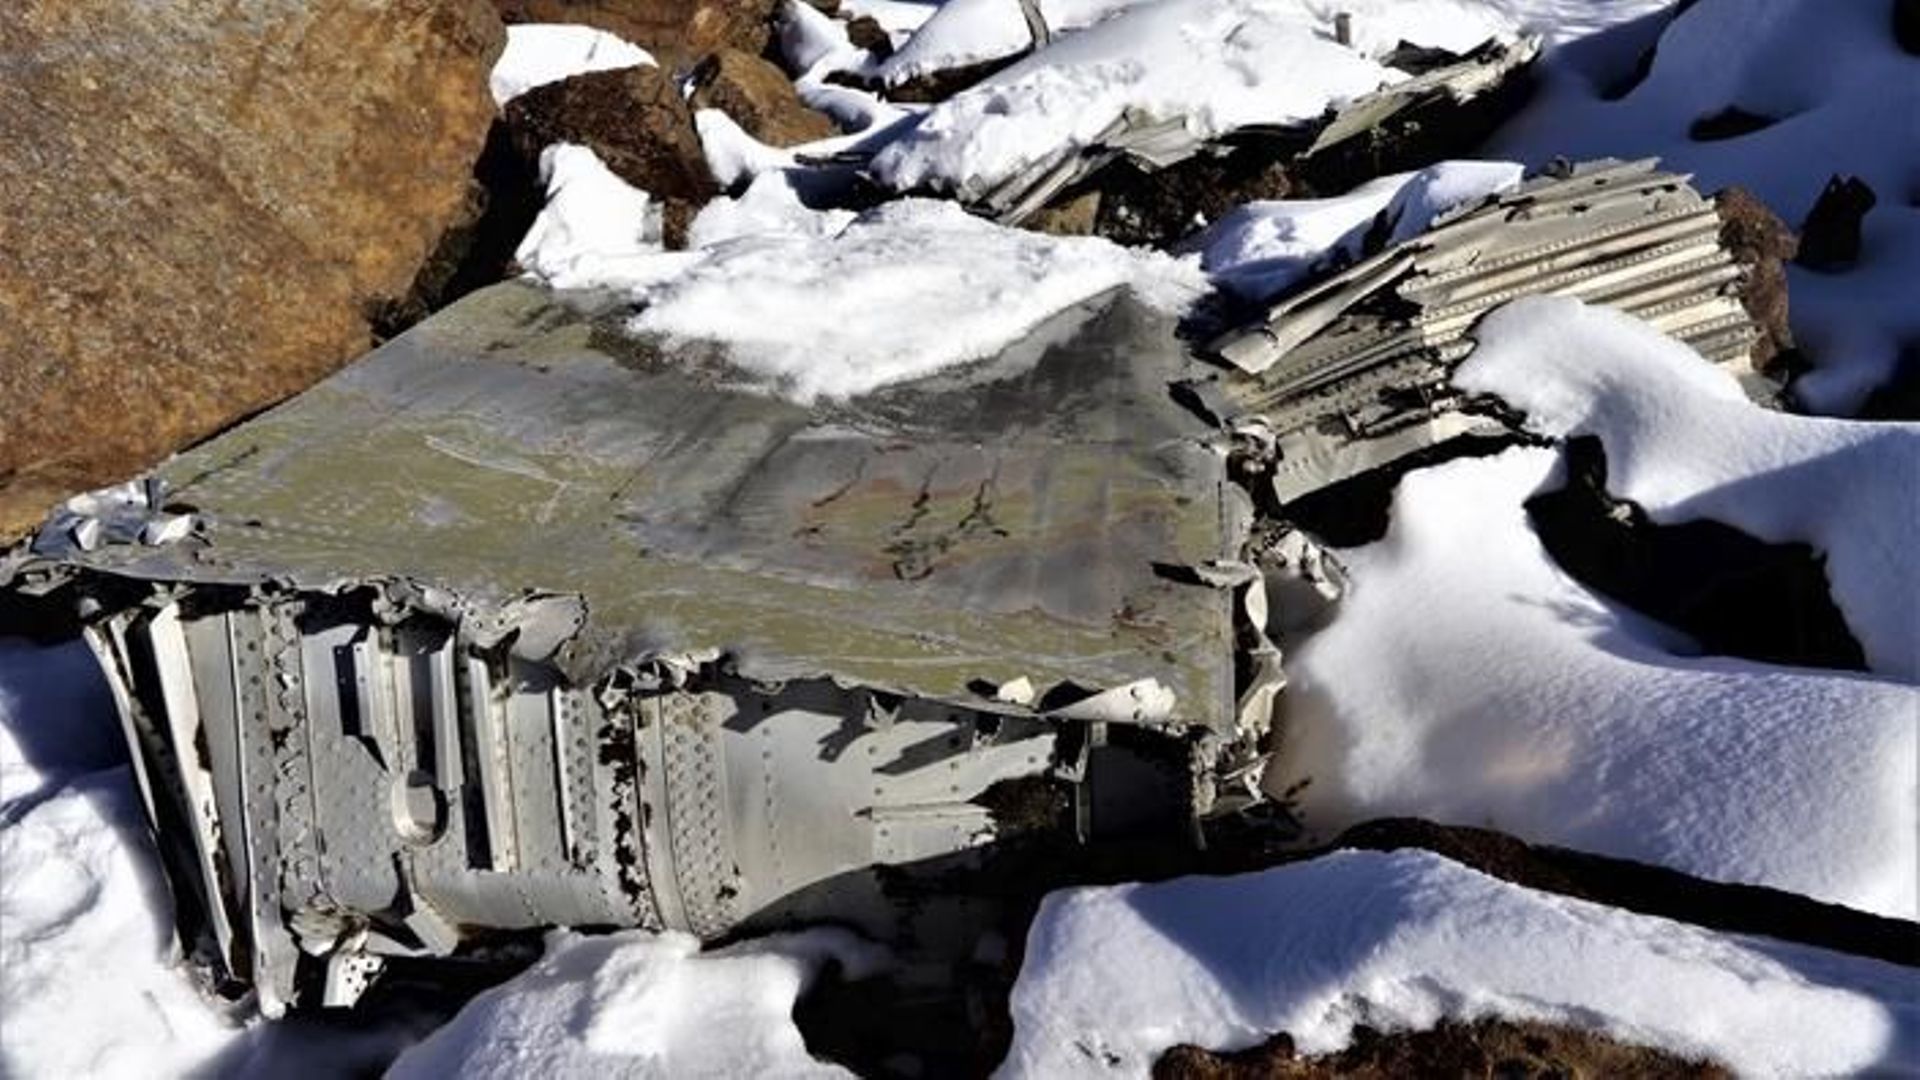 L’épave d’un avion US de la Seconde Guerre mondiale retrouvé 77 ans après sa disparition